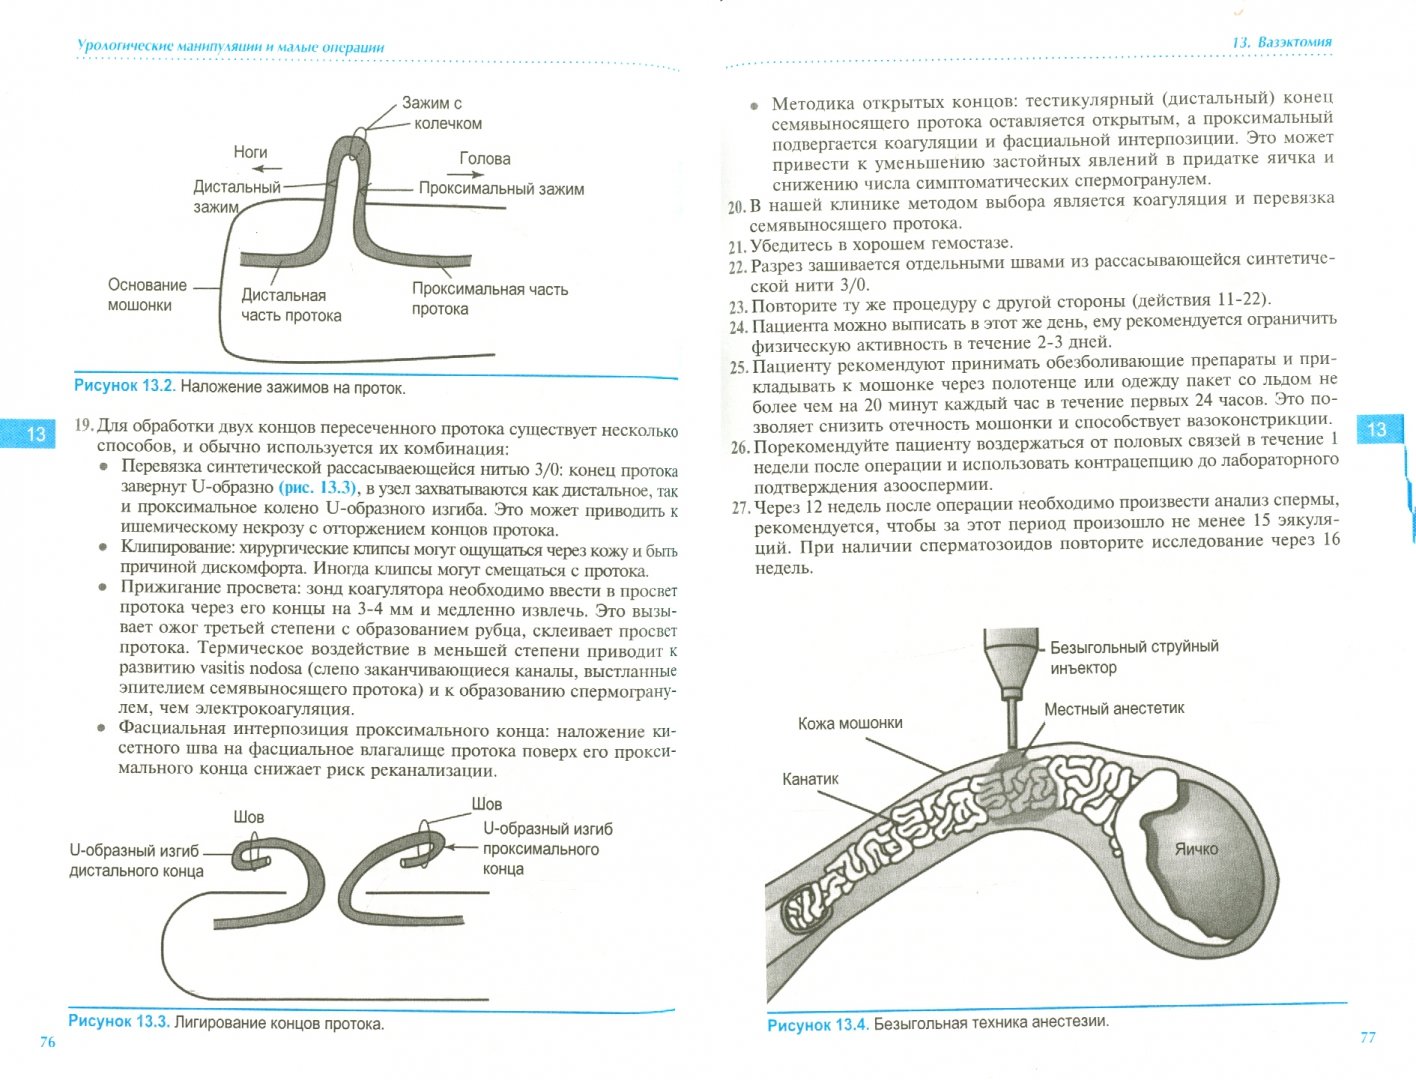 Иллюстрация 1 из 5 для Урологические манипуляции и малые операции - Хашим, Абрамс, Дмоховски | Лабиринт - книги. Источник: Лабиринт